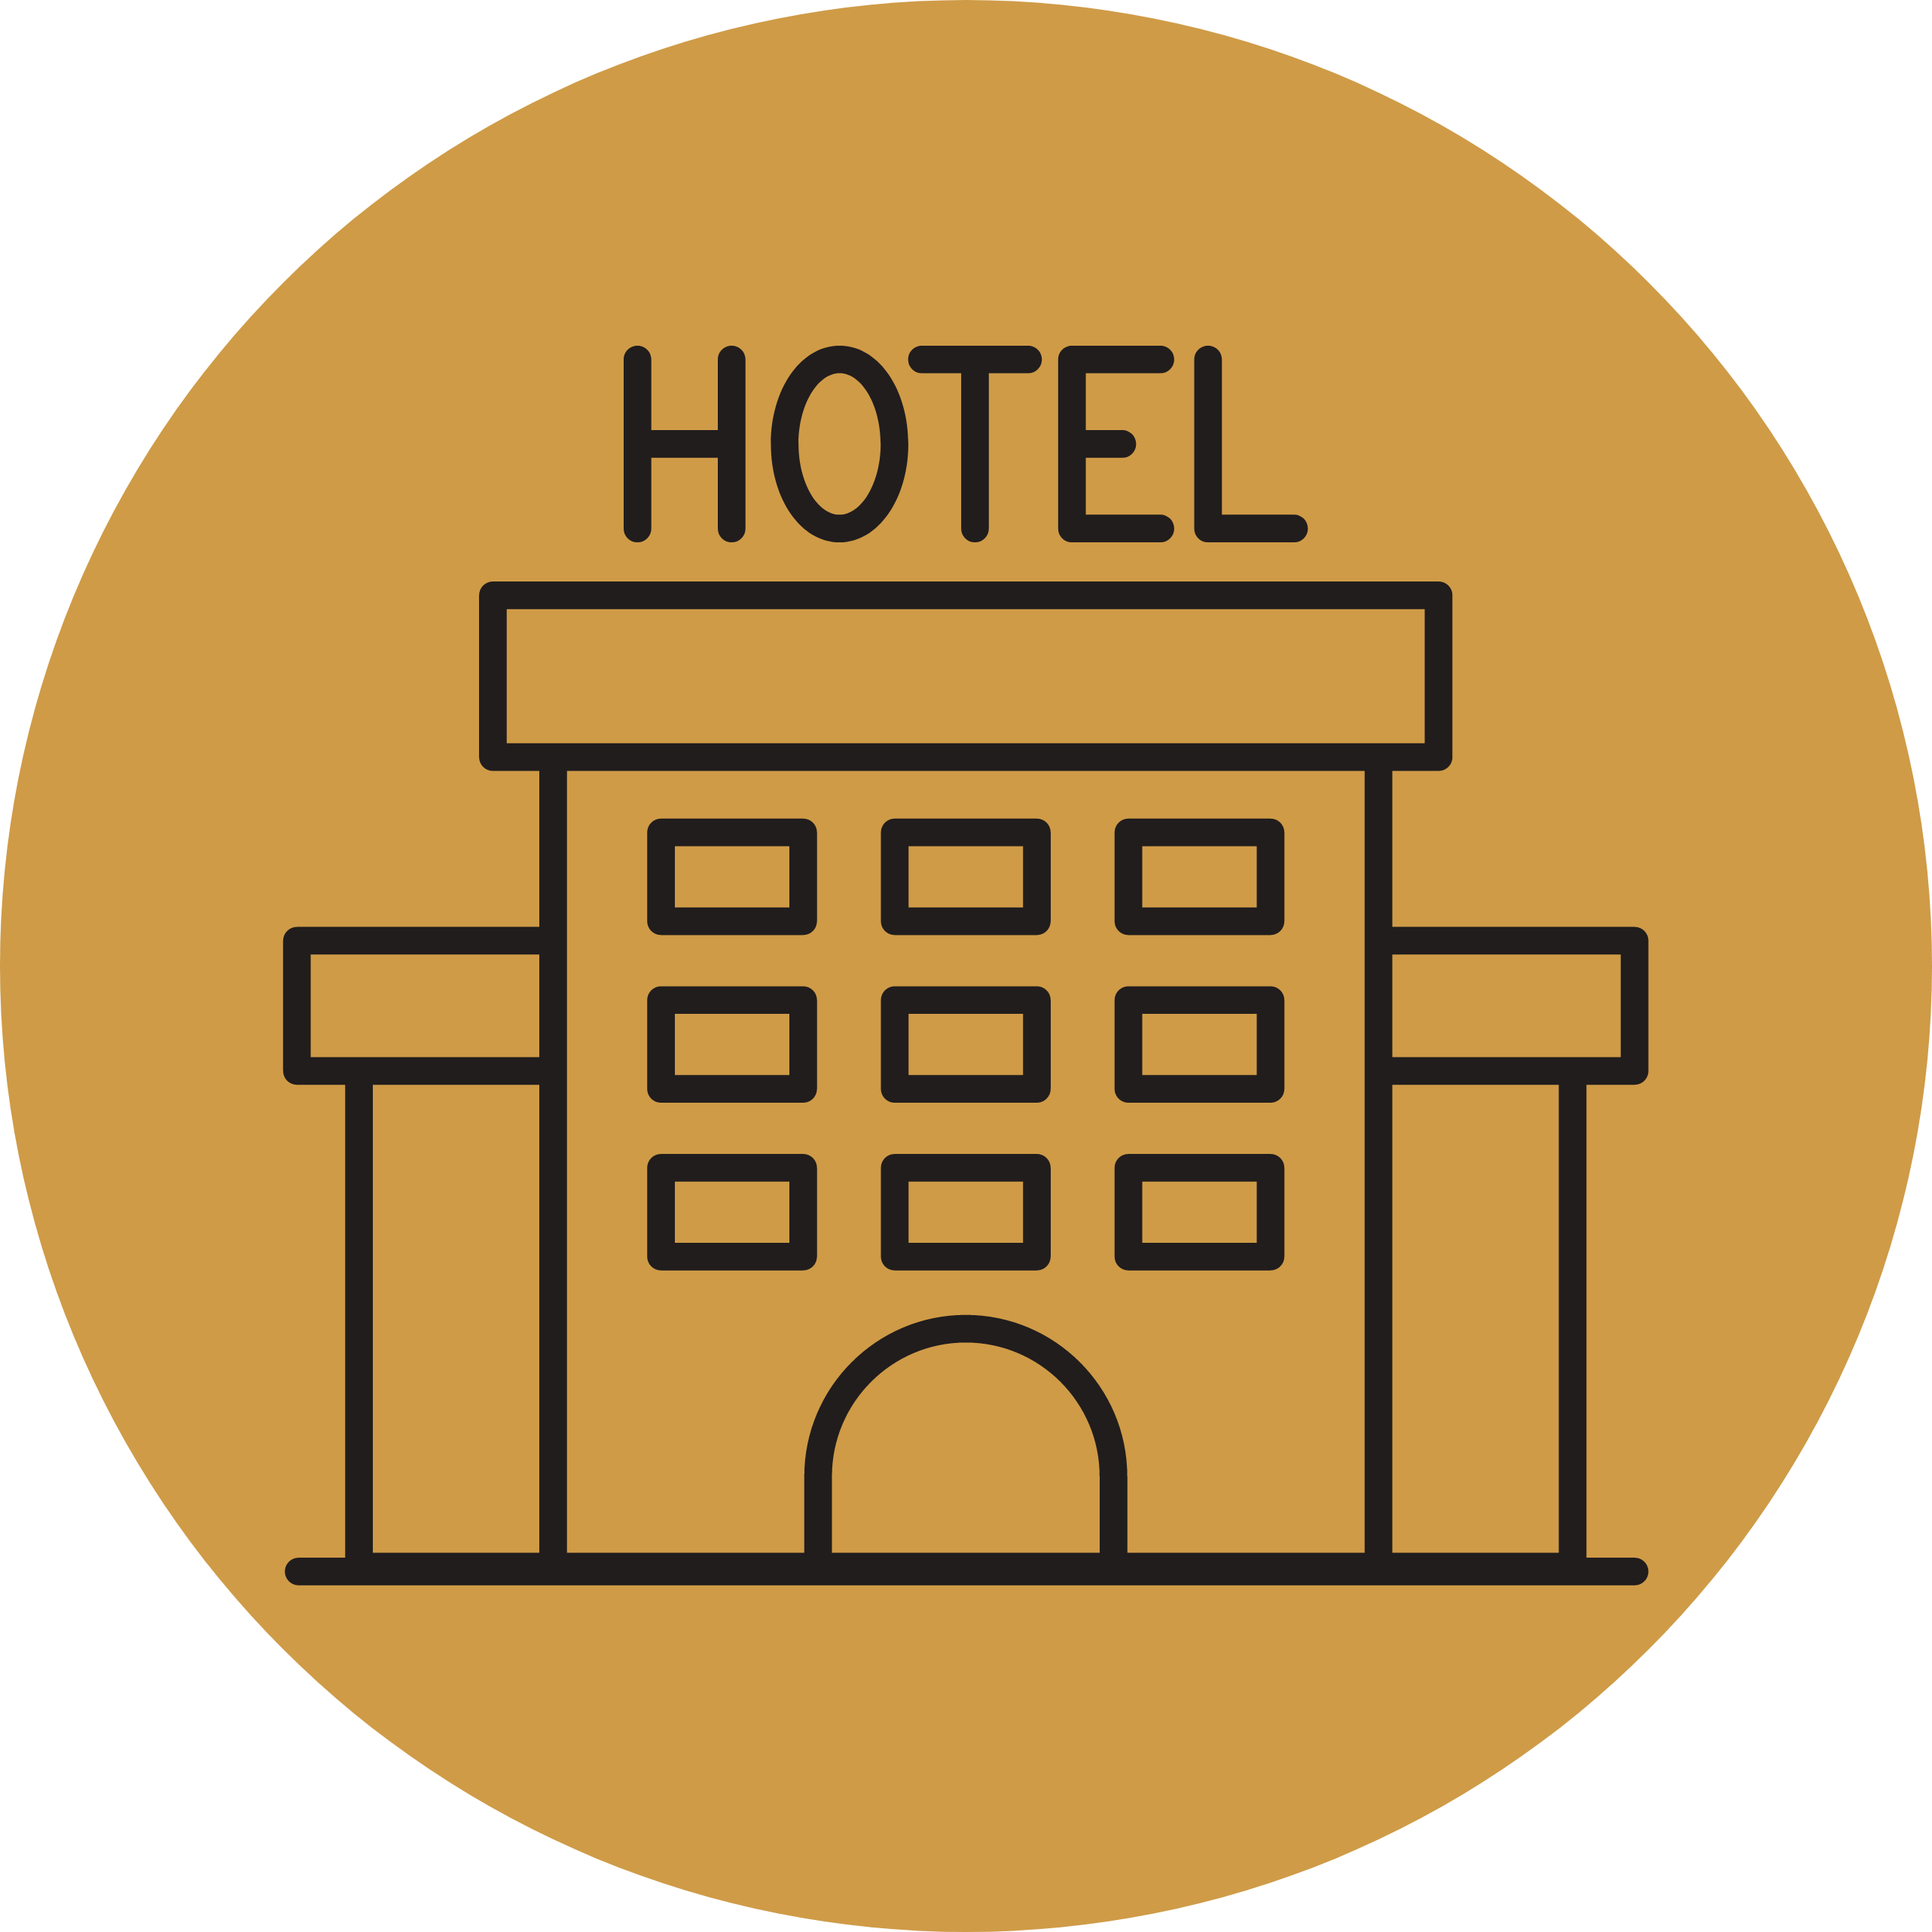 Hotéis